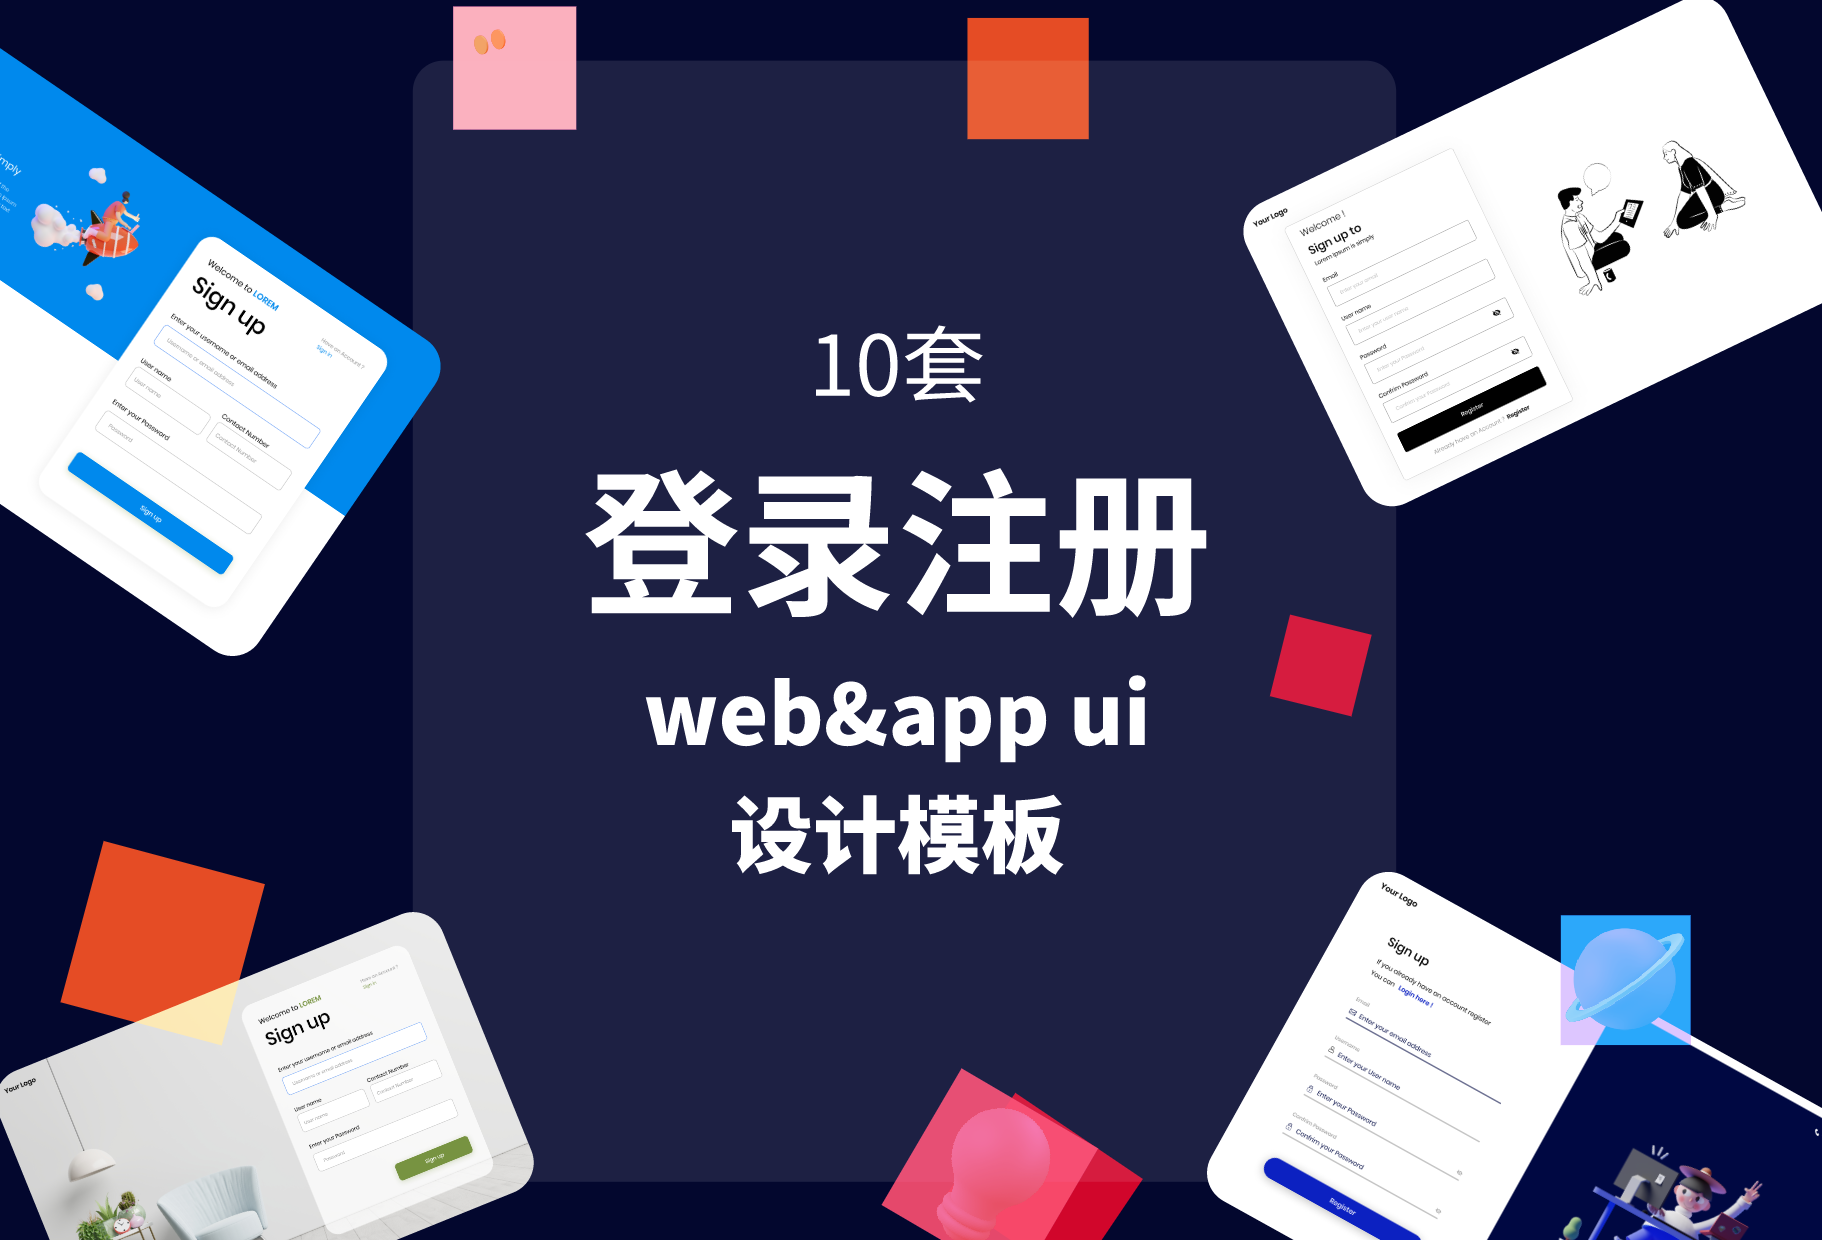 10套登录注册web&app ui设计模板